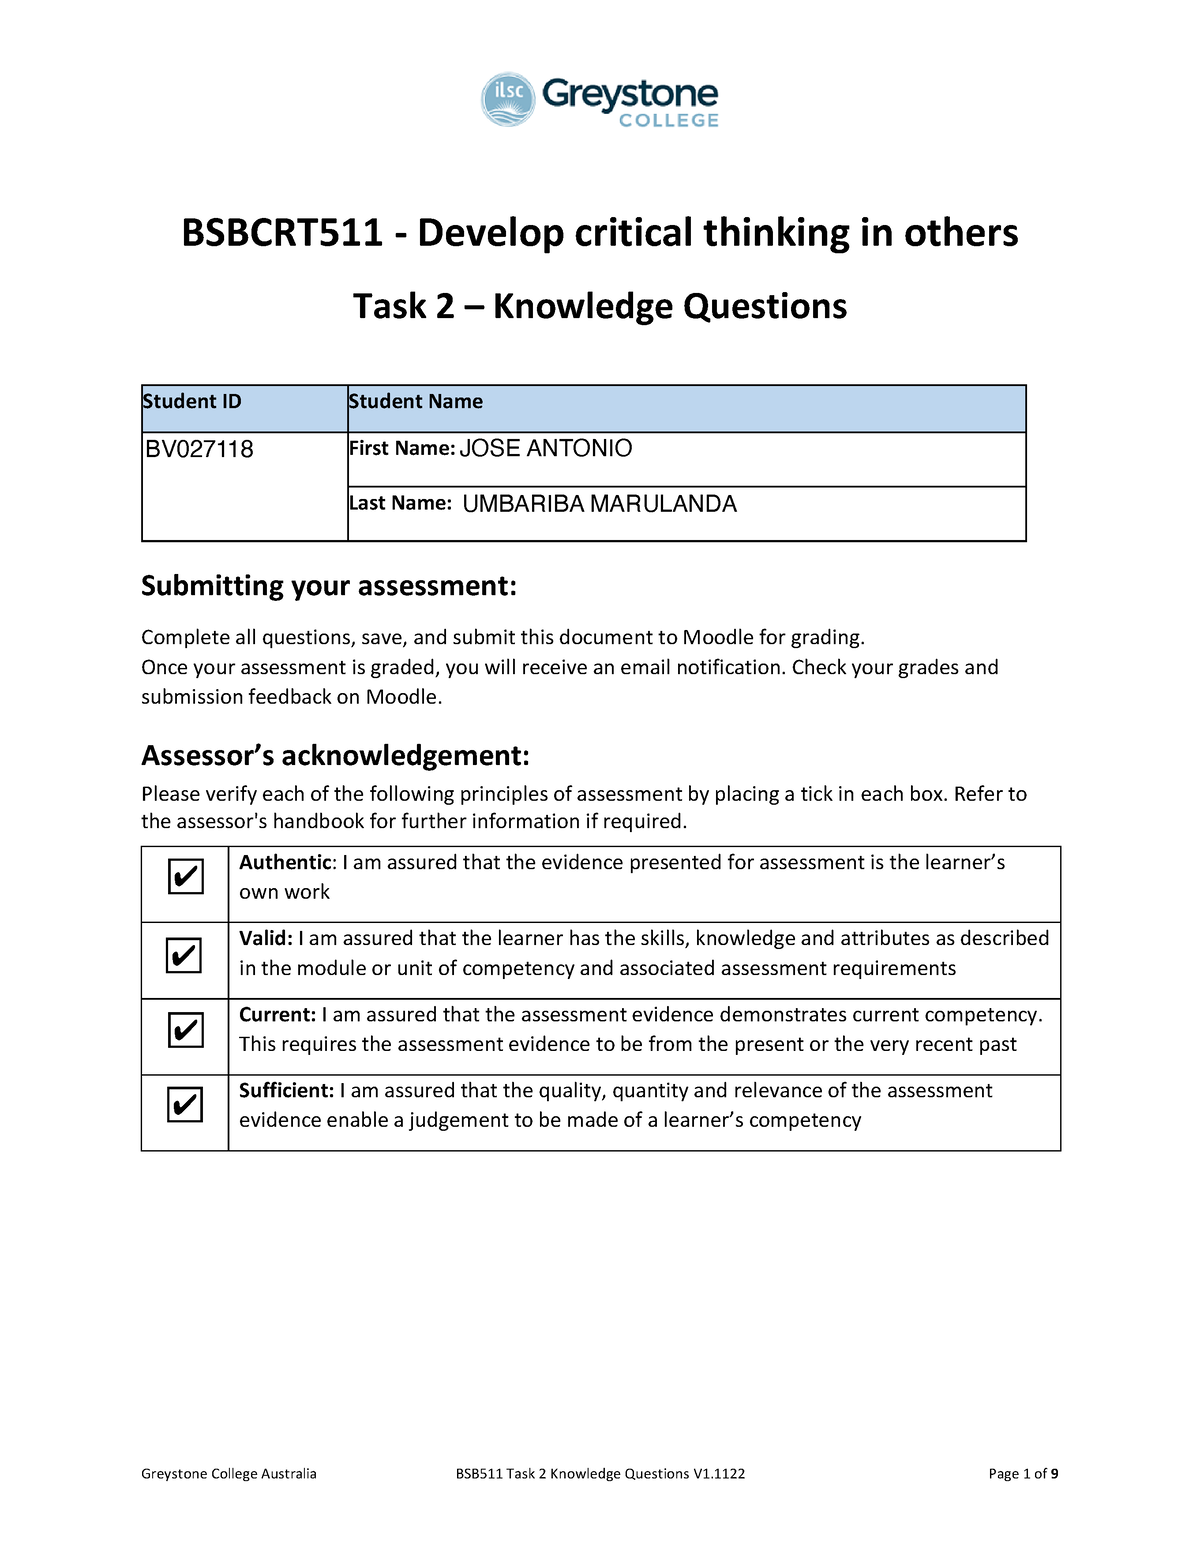 bsbcrt511 develop critical thinking